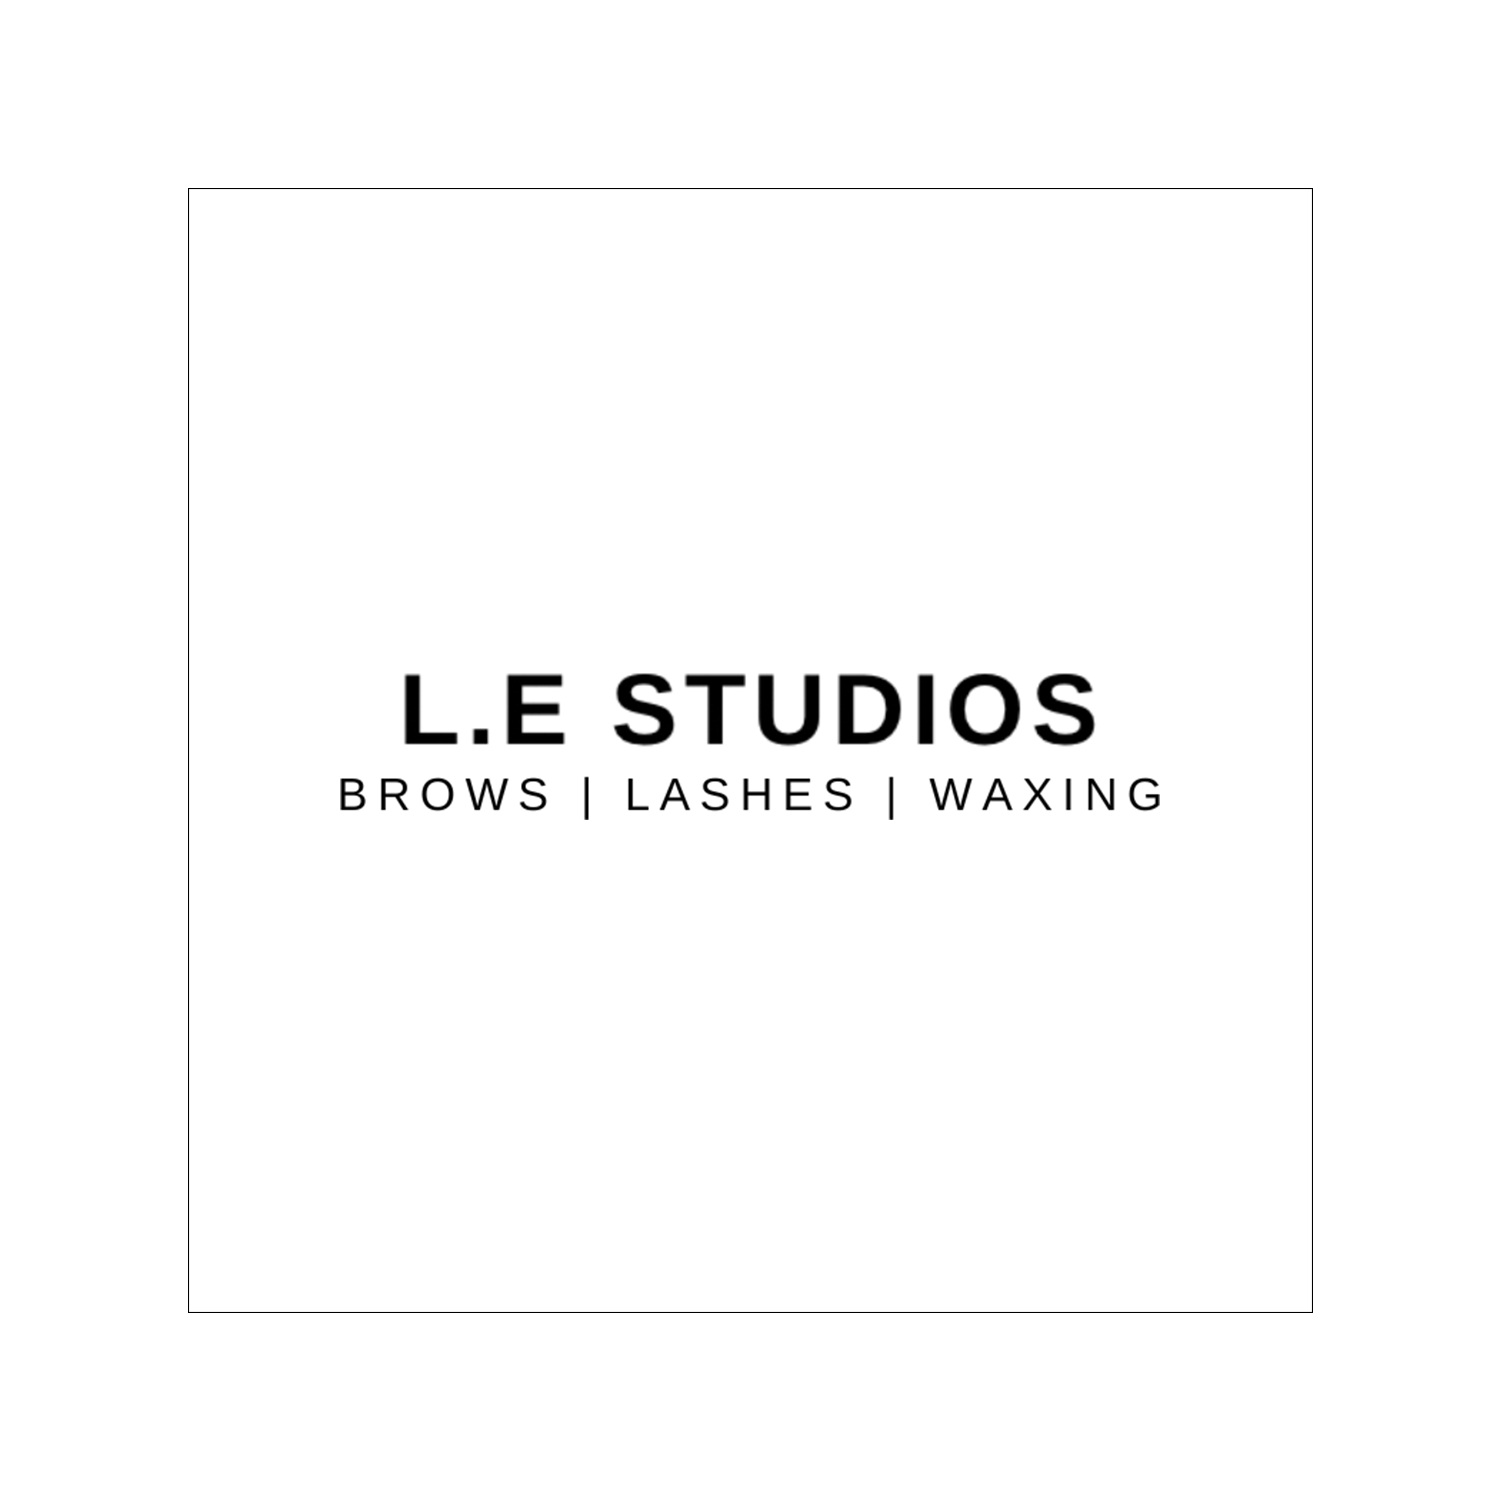 L.E Studios